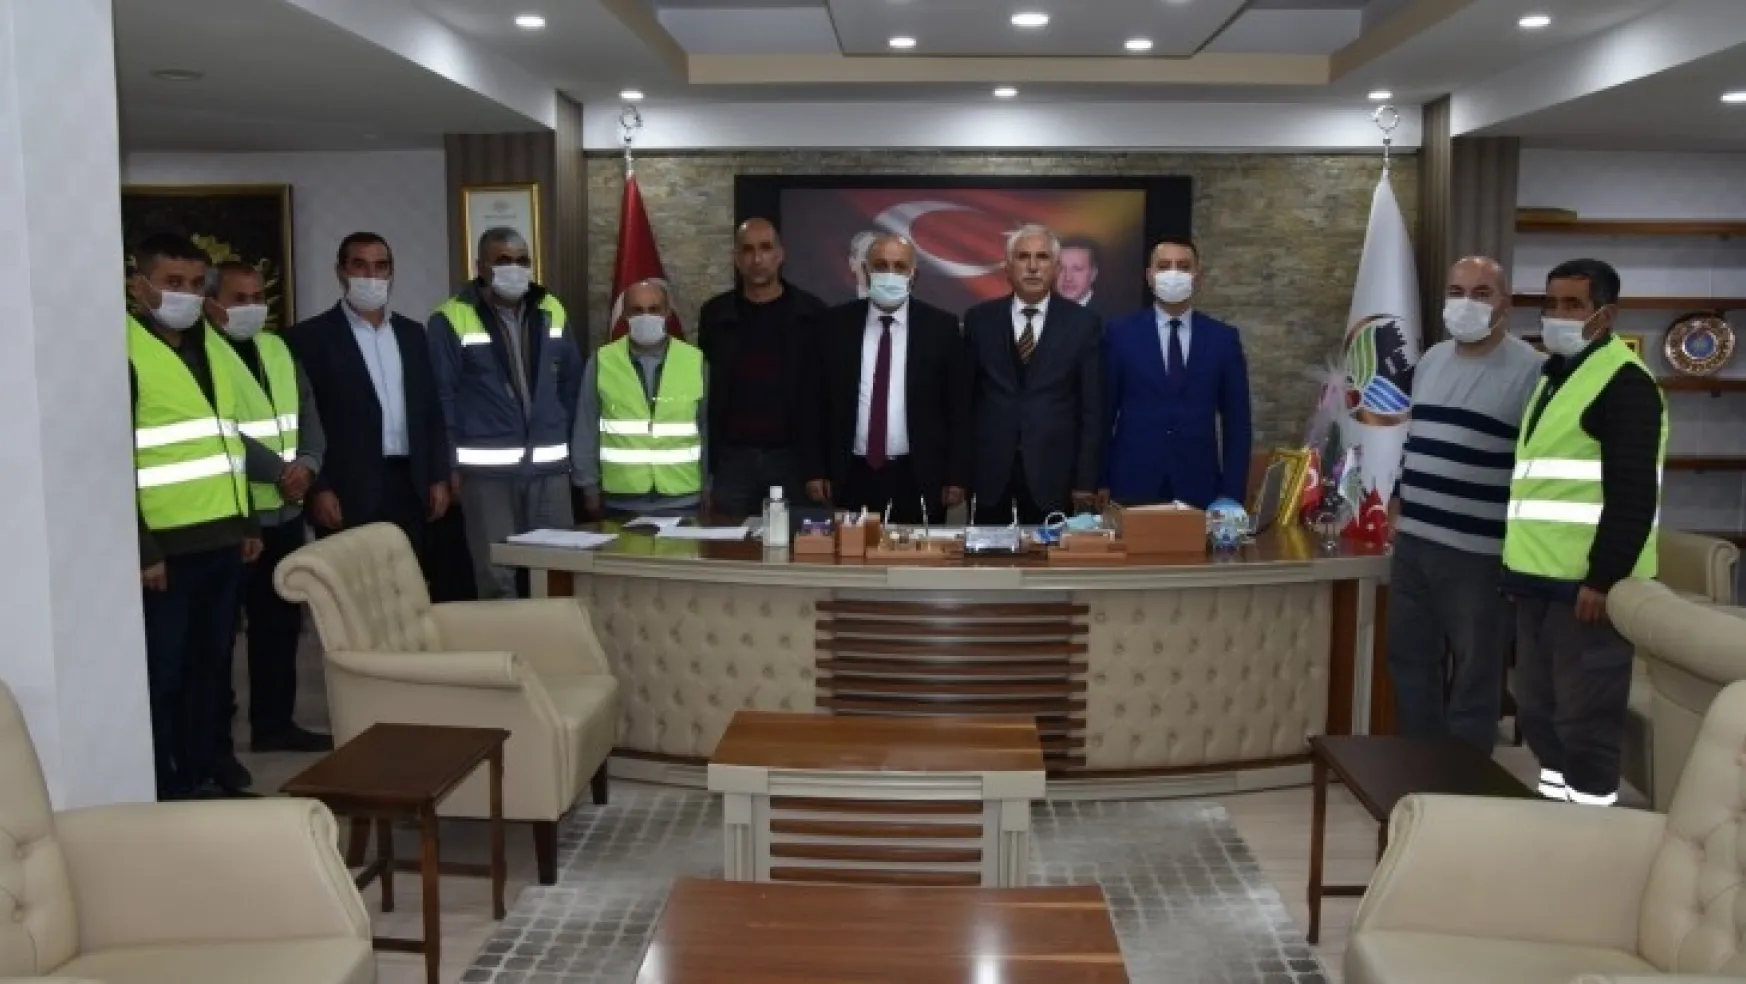 Belediye-iş sendikası ile Doğanşehir belediyesi arasında KHK li işçileri kapsayan toplu sözleşme imzalandı.